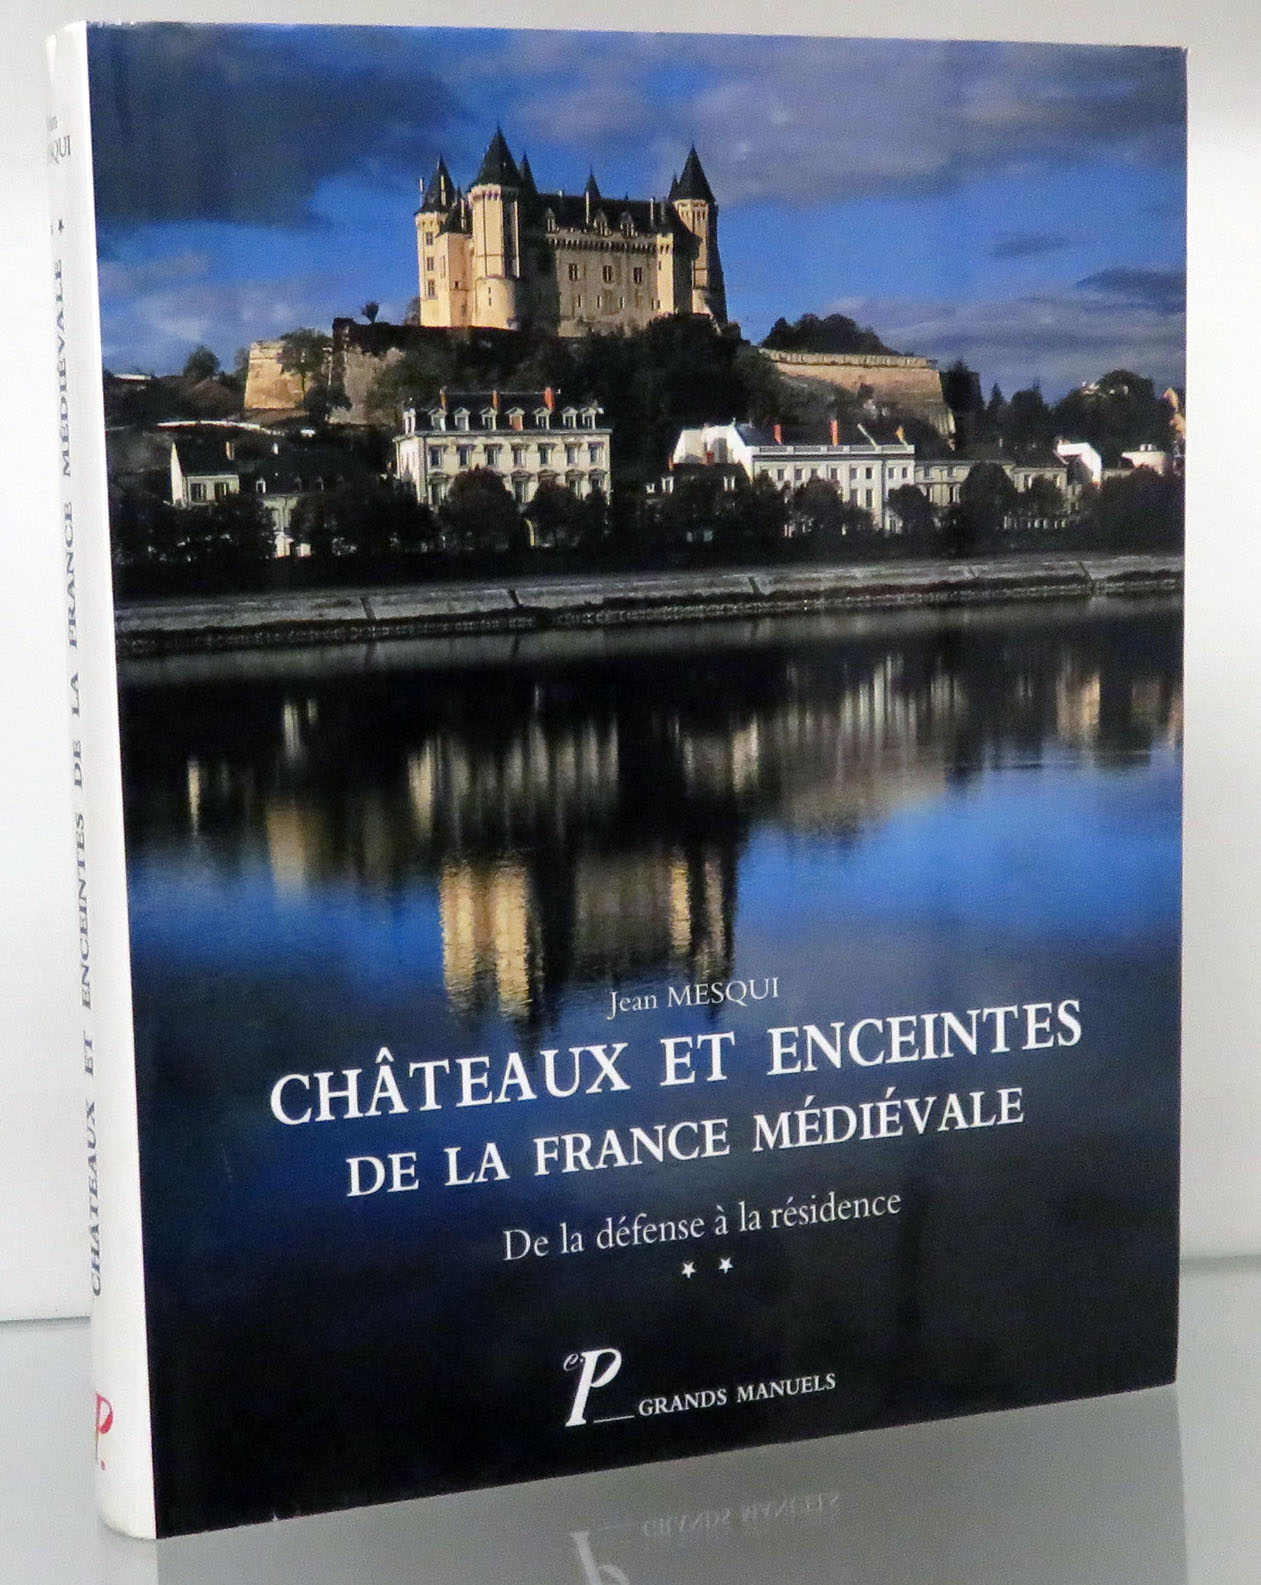 Chateaux Et Enceintes De ;a France Medievale. De la defense a l residence. 2. La Residence Et Les Elements D'Architecture 